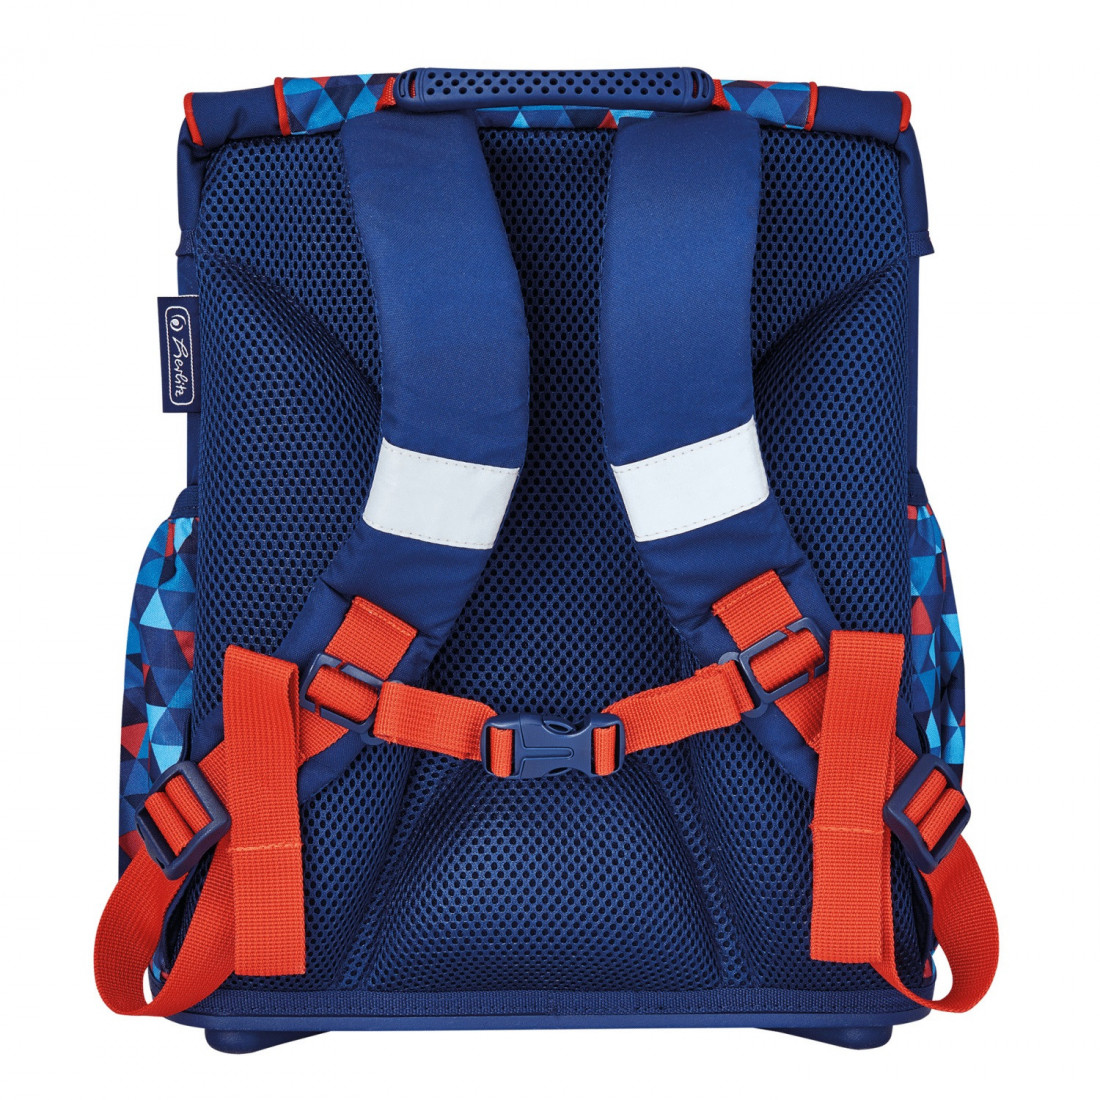 Σχολική τσάντα Ultralight Plus geometric50026838 Herlitz